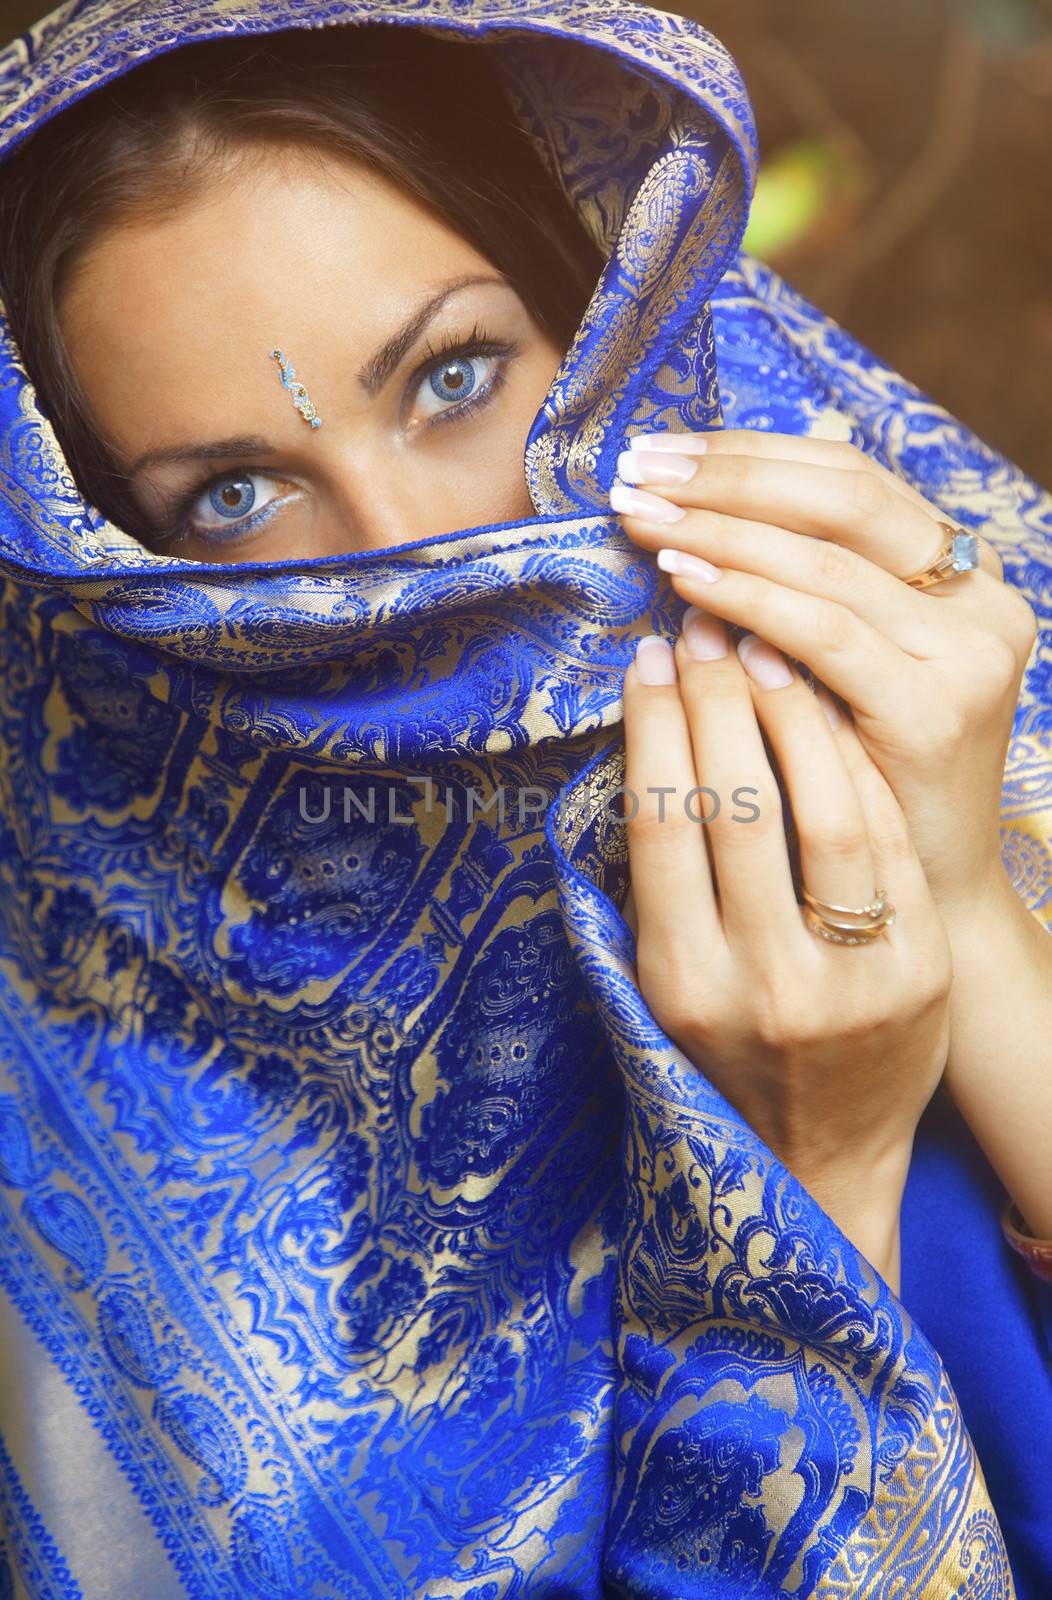 Pretty woman in blue sari. India. Close-up portrait